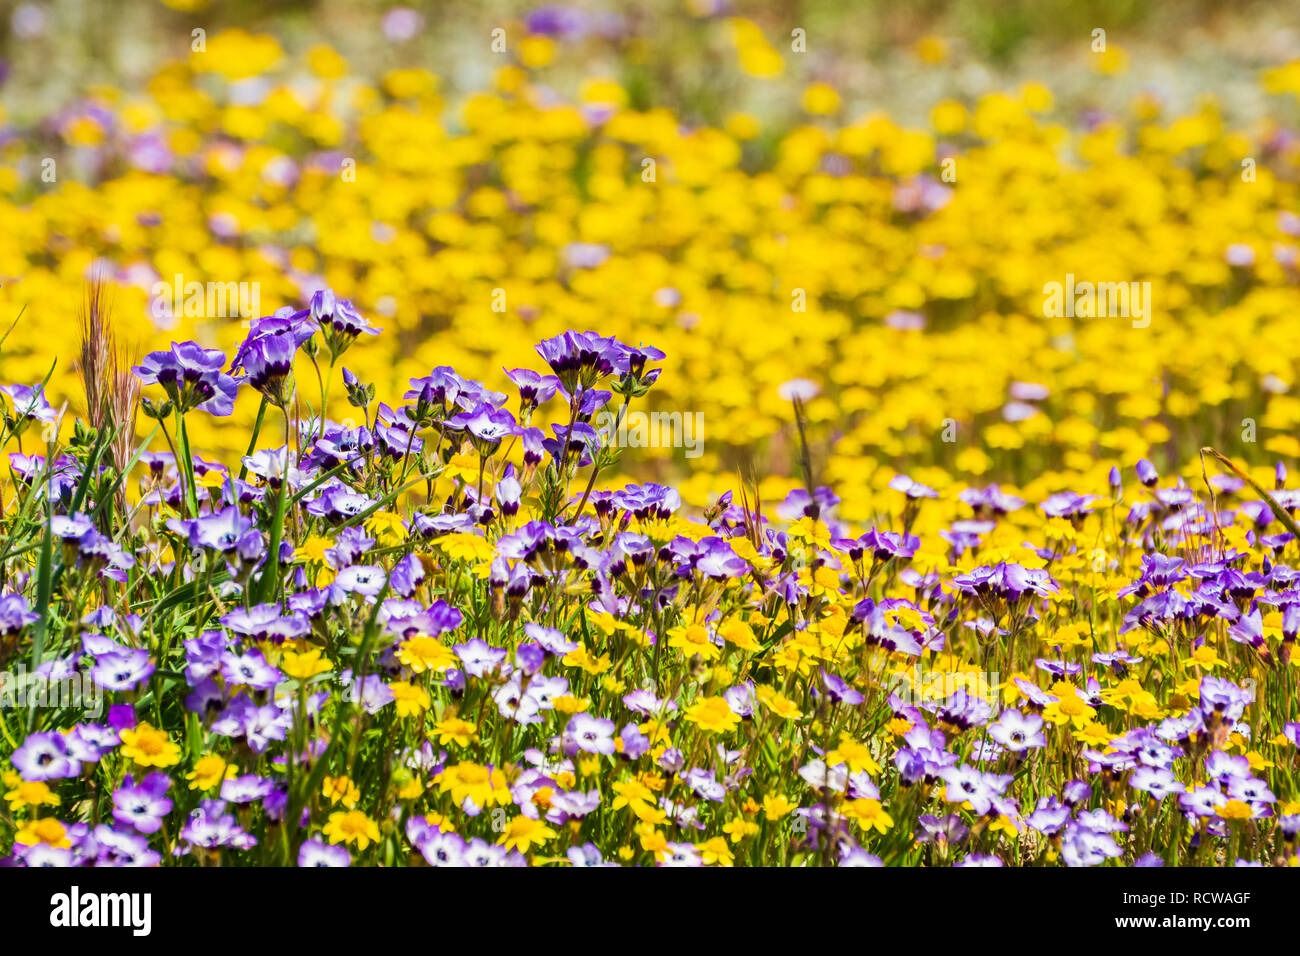 Goldfields et fleurs sauvages Gilia sur un pré en fleurs, en Californie Banque D'Images